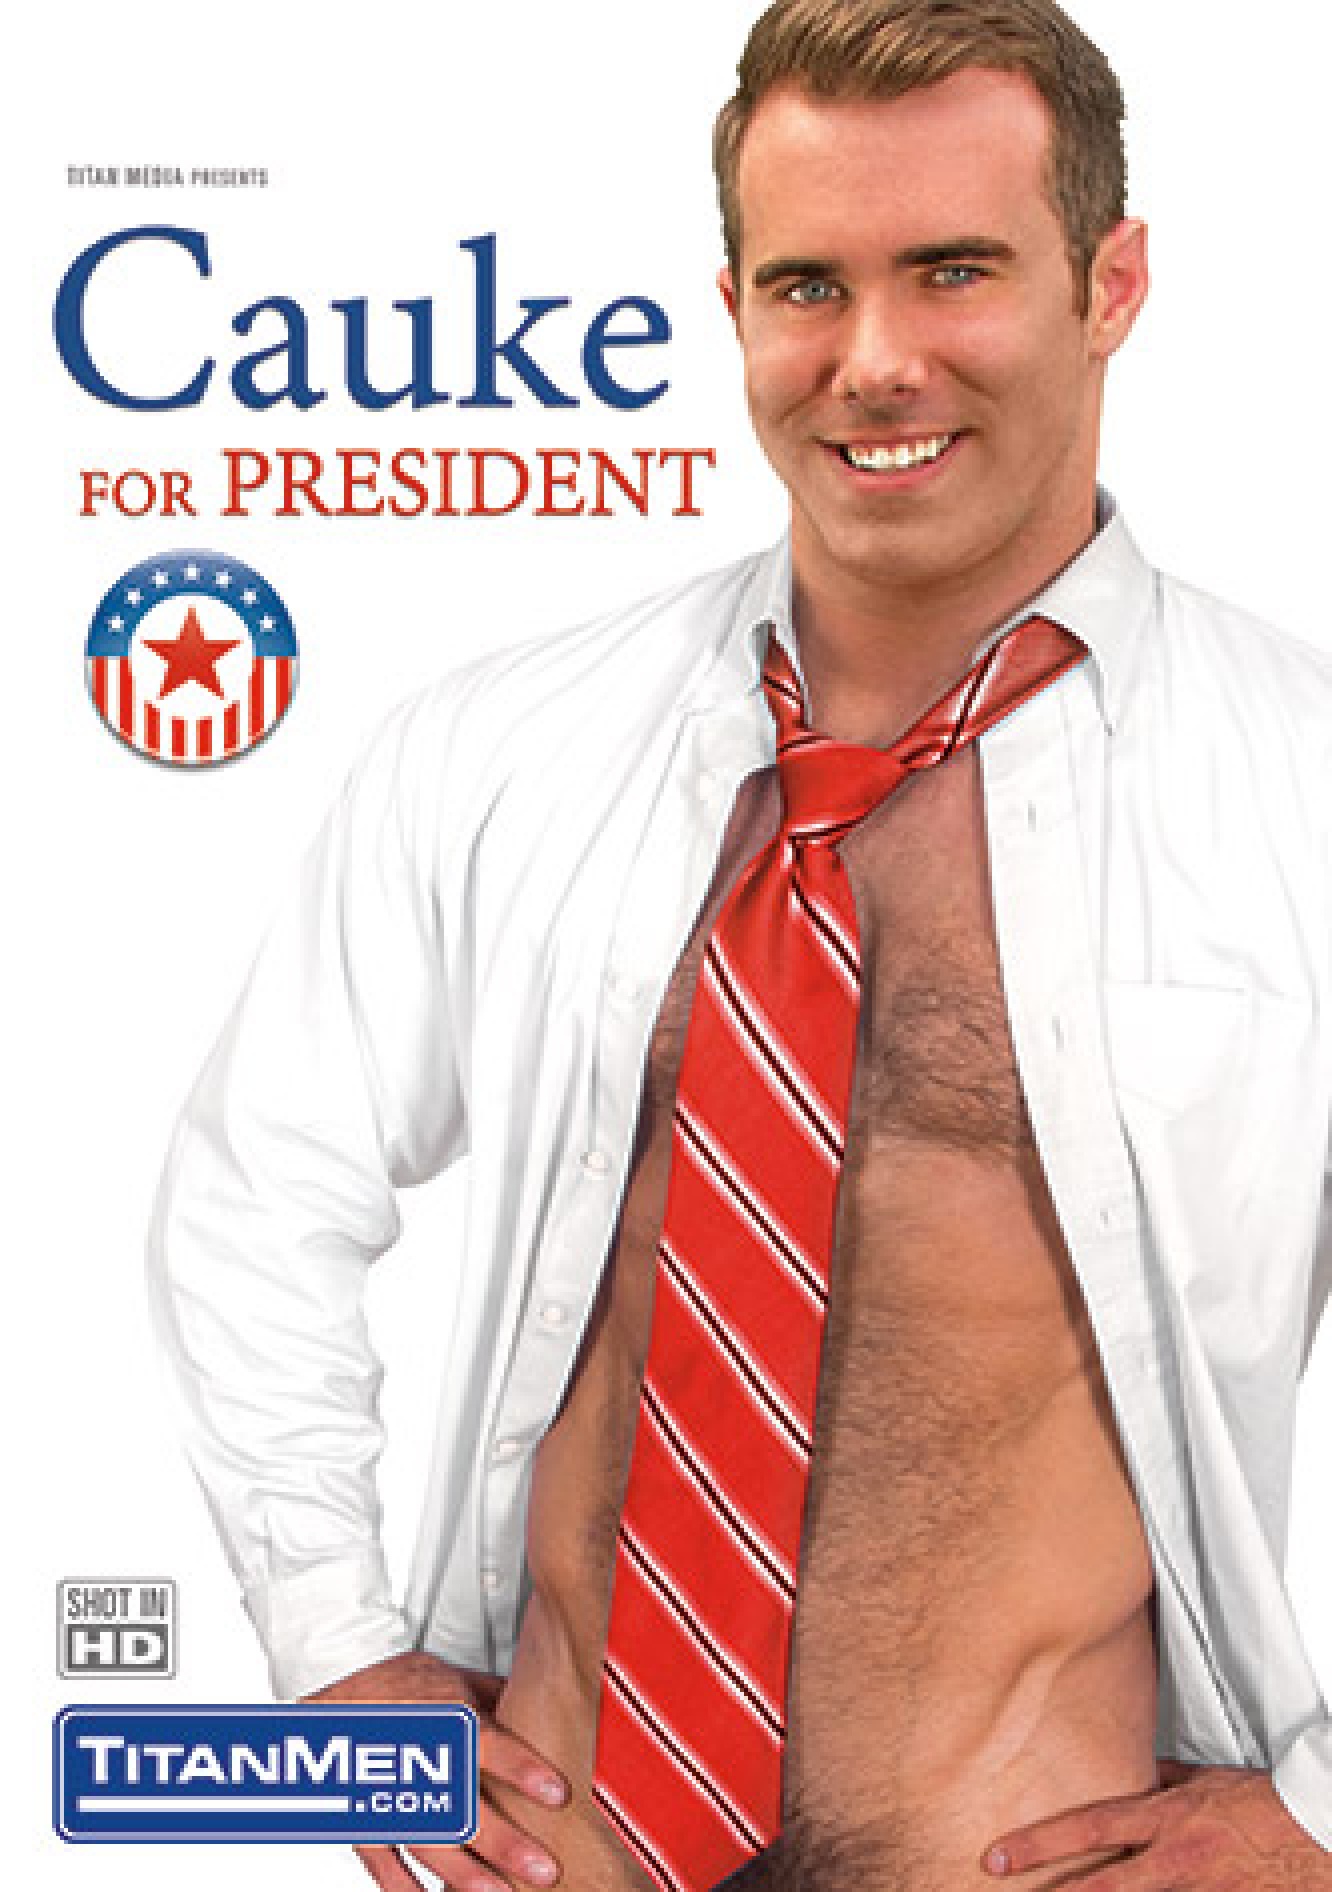 CAUKE for President